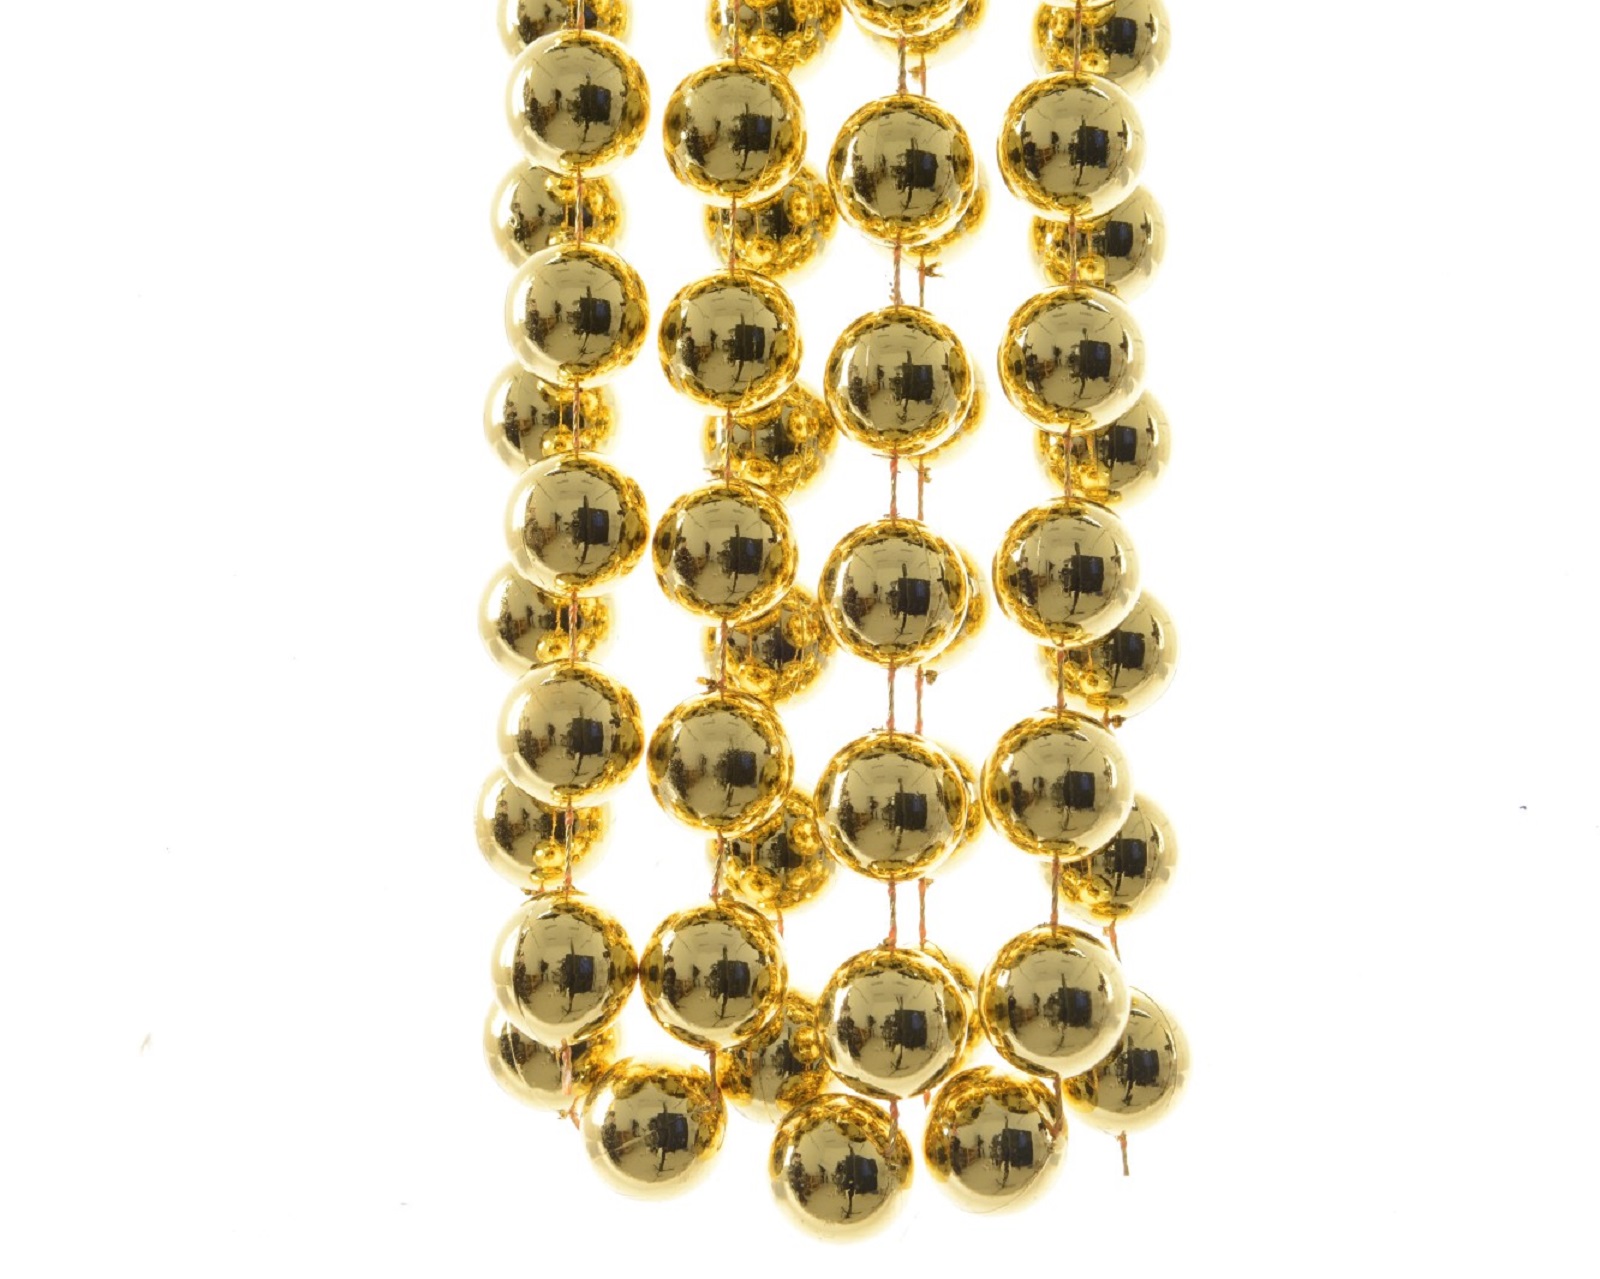 Perlenkette Kette Baumschmuck Perlengirlande Weihnachtsdeko Deko Satingold 2,70m